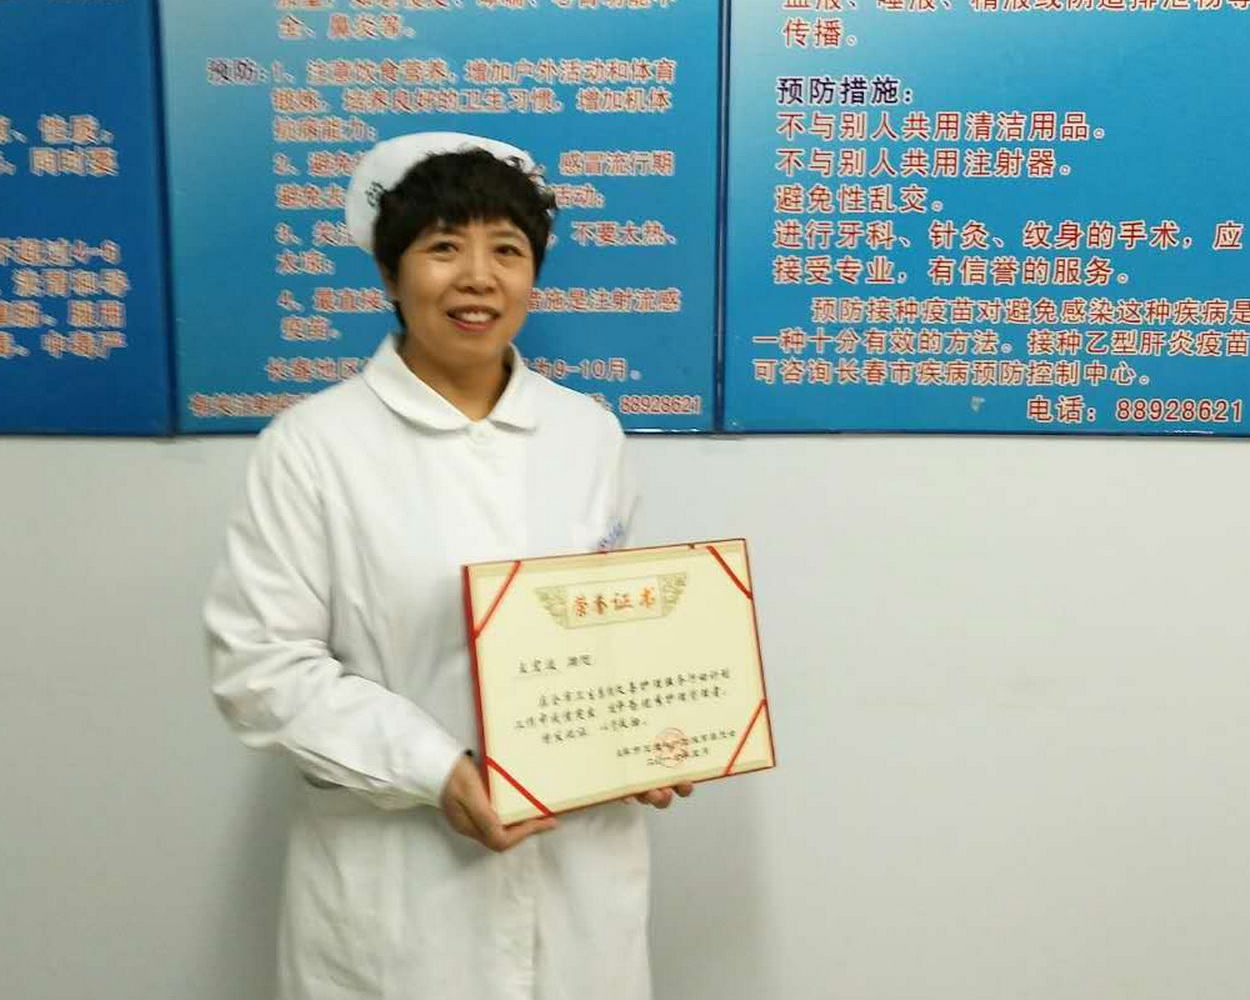 2016年5月,王洪波在长春市卫生系统改善护理服务行动计划工作中,被评为优秀护理管理者